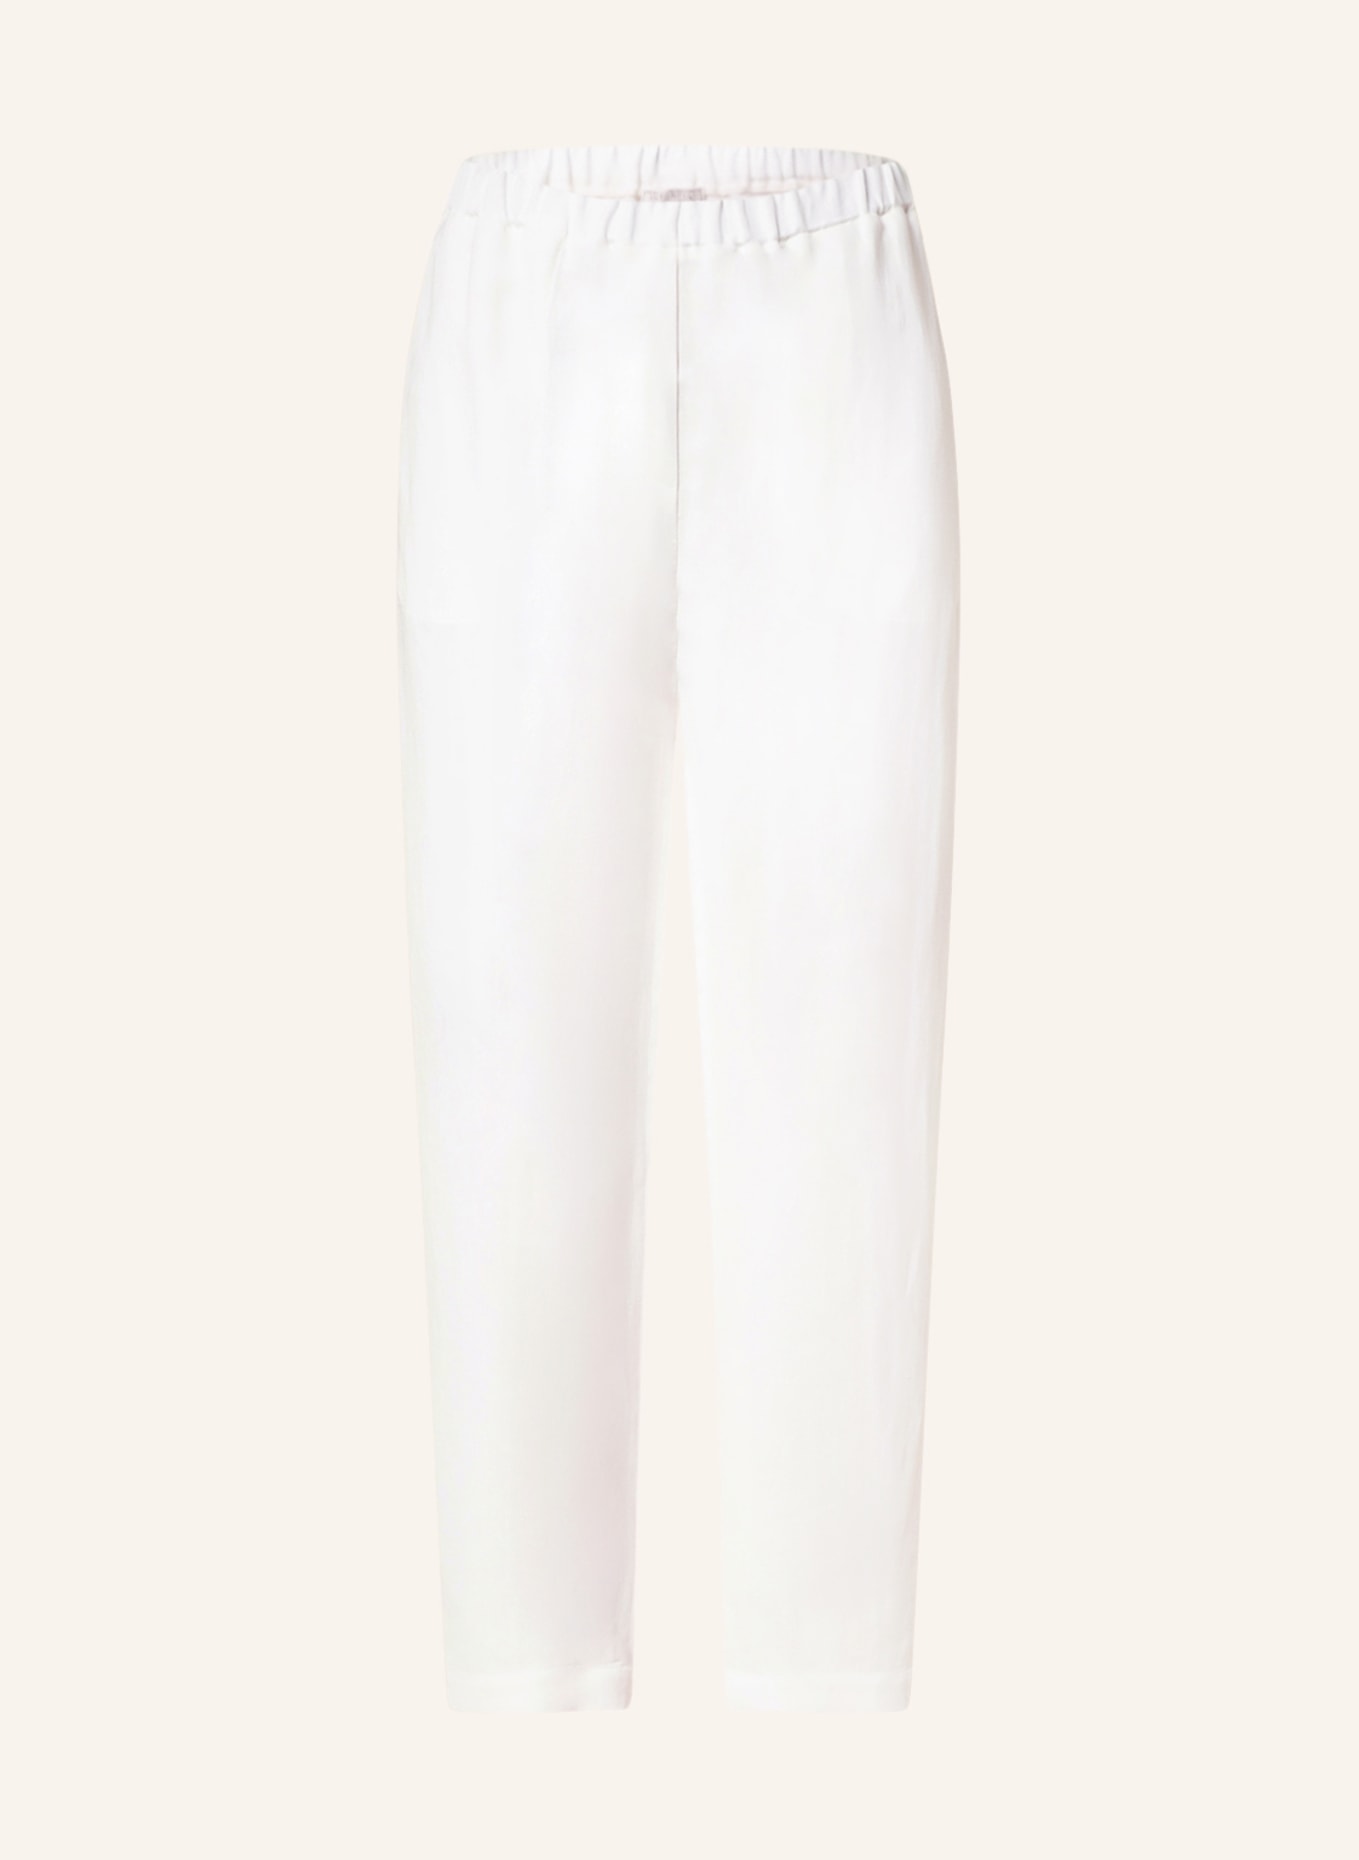 ANTONELLI firenze Trousers , Color: WHITE (Image 1)